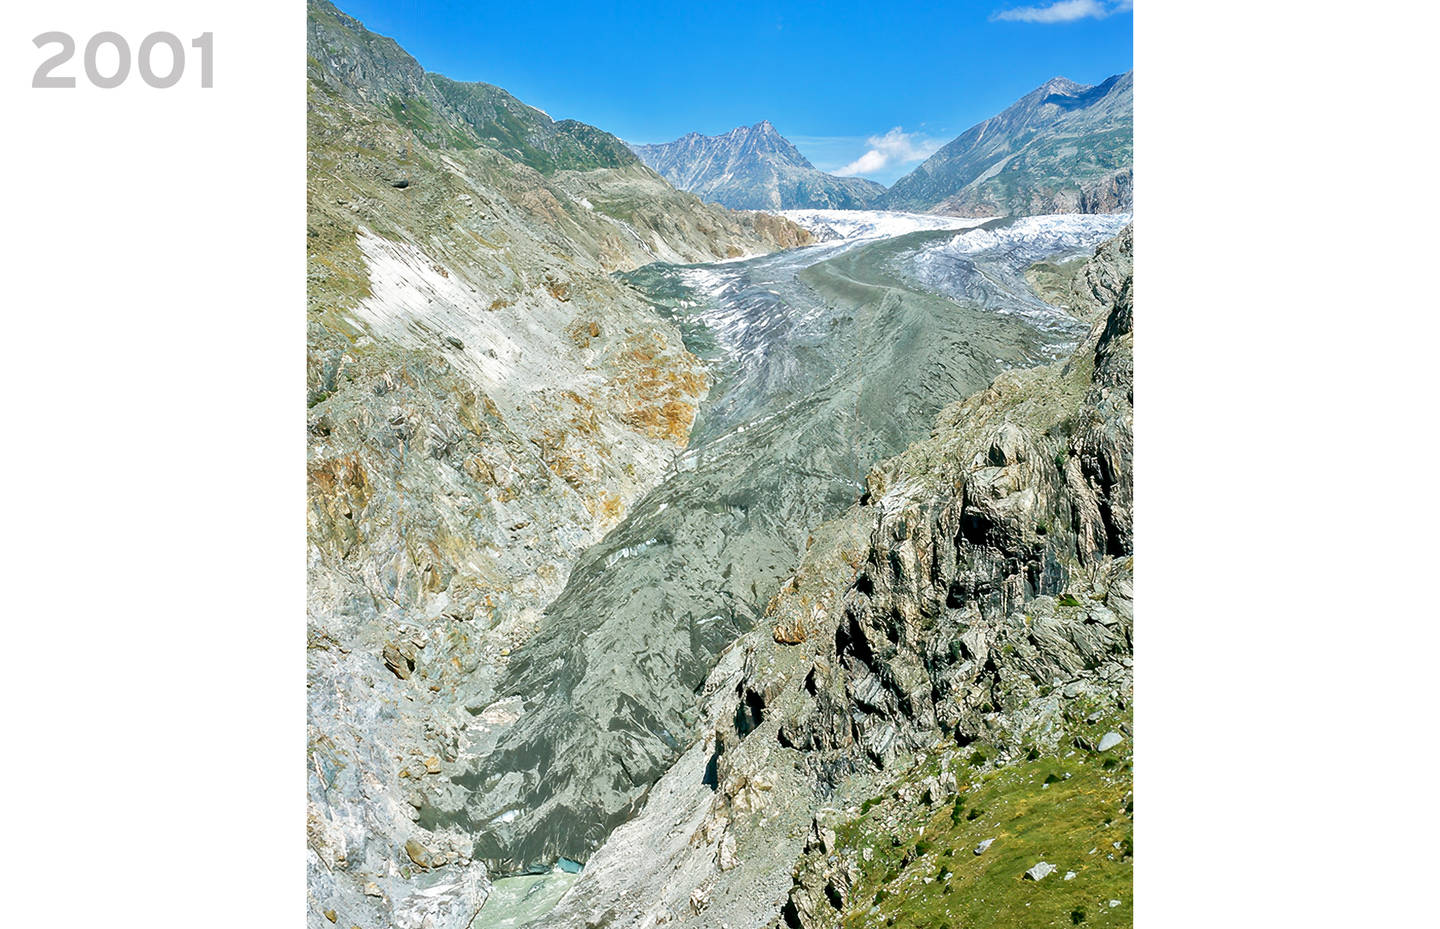 Aletschgletscher im Jahr 2001 vom Aletschkopf aus fotografiert